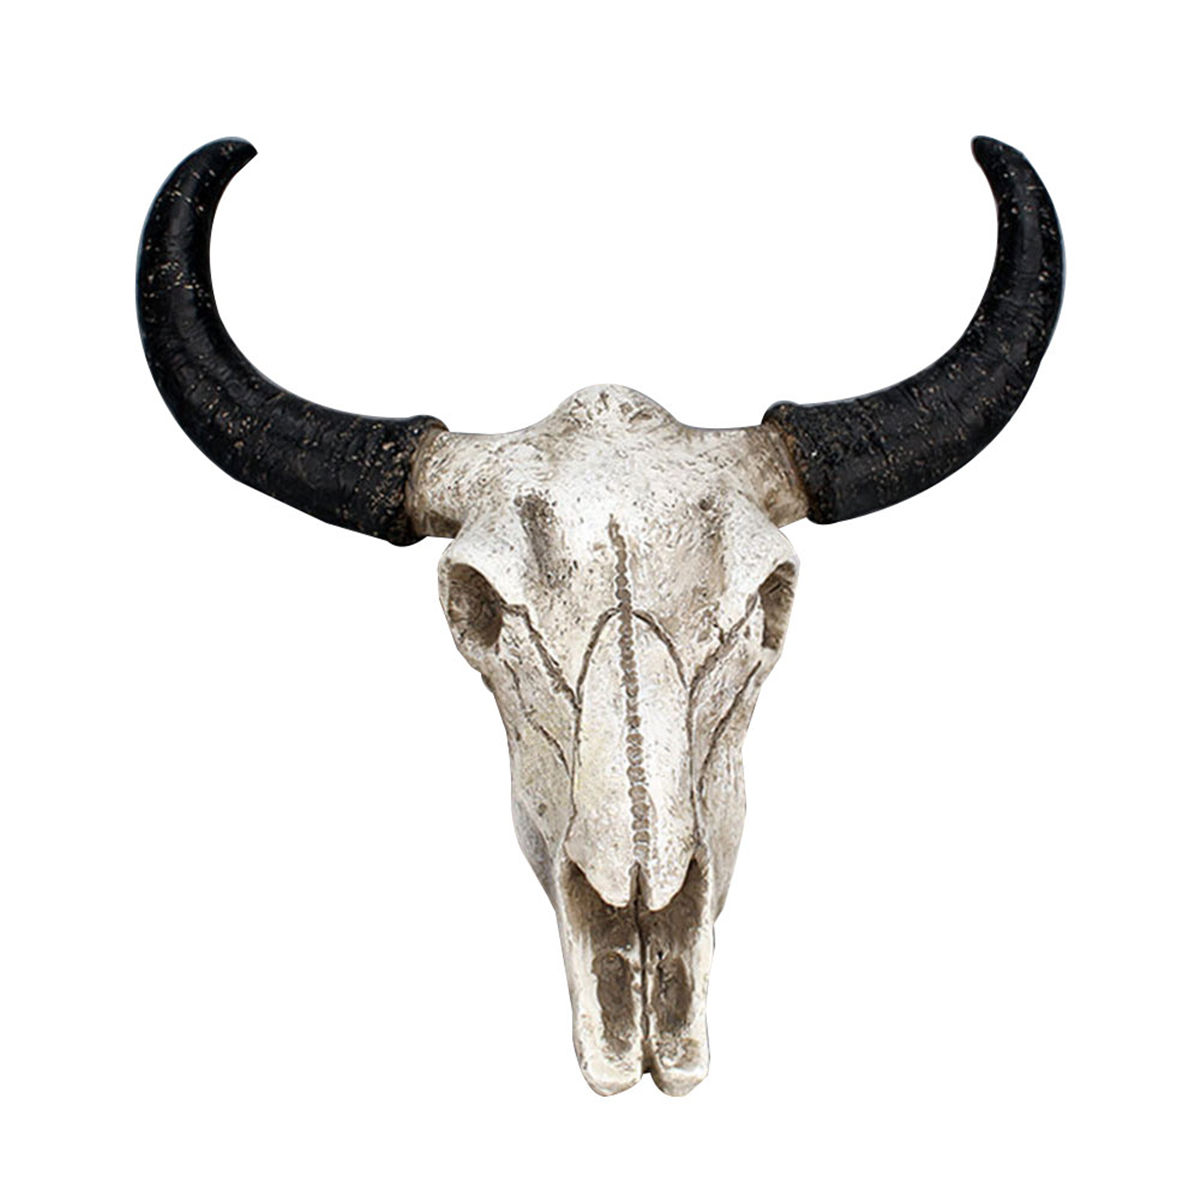 

3D Longhorn Cow Череп Голова из Смолы, Настенная Скульптура, Ремесло, Рога Быка, Украшения